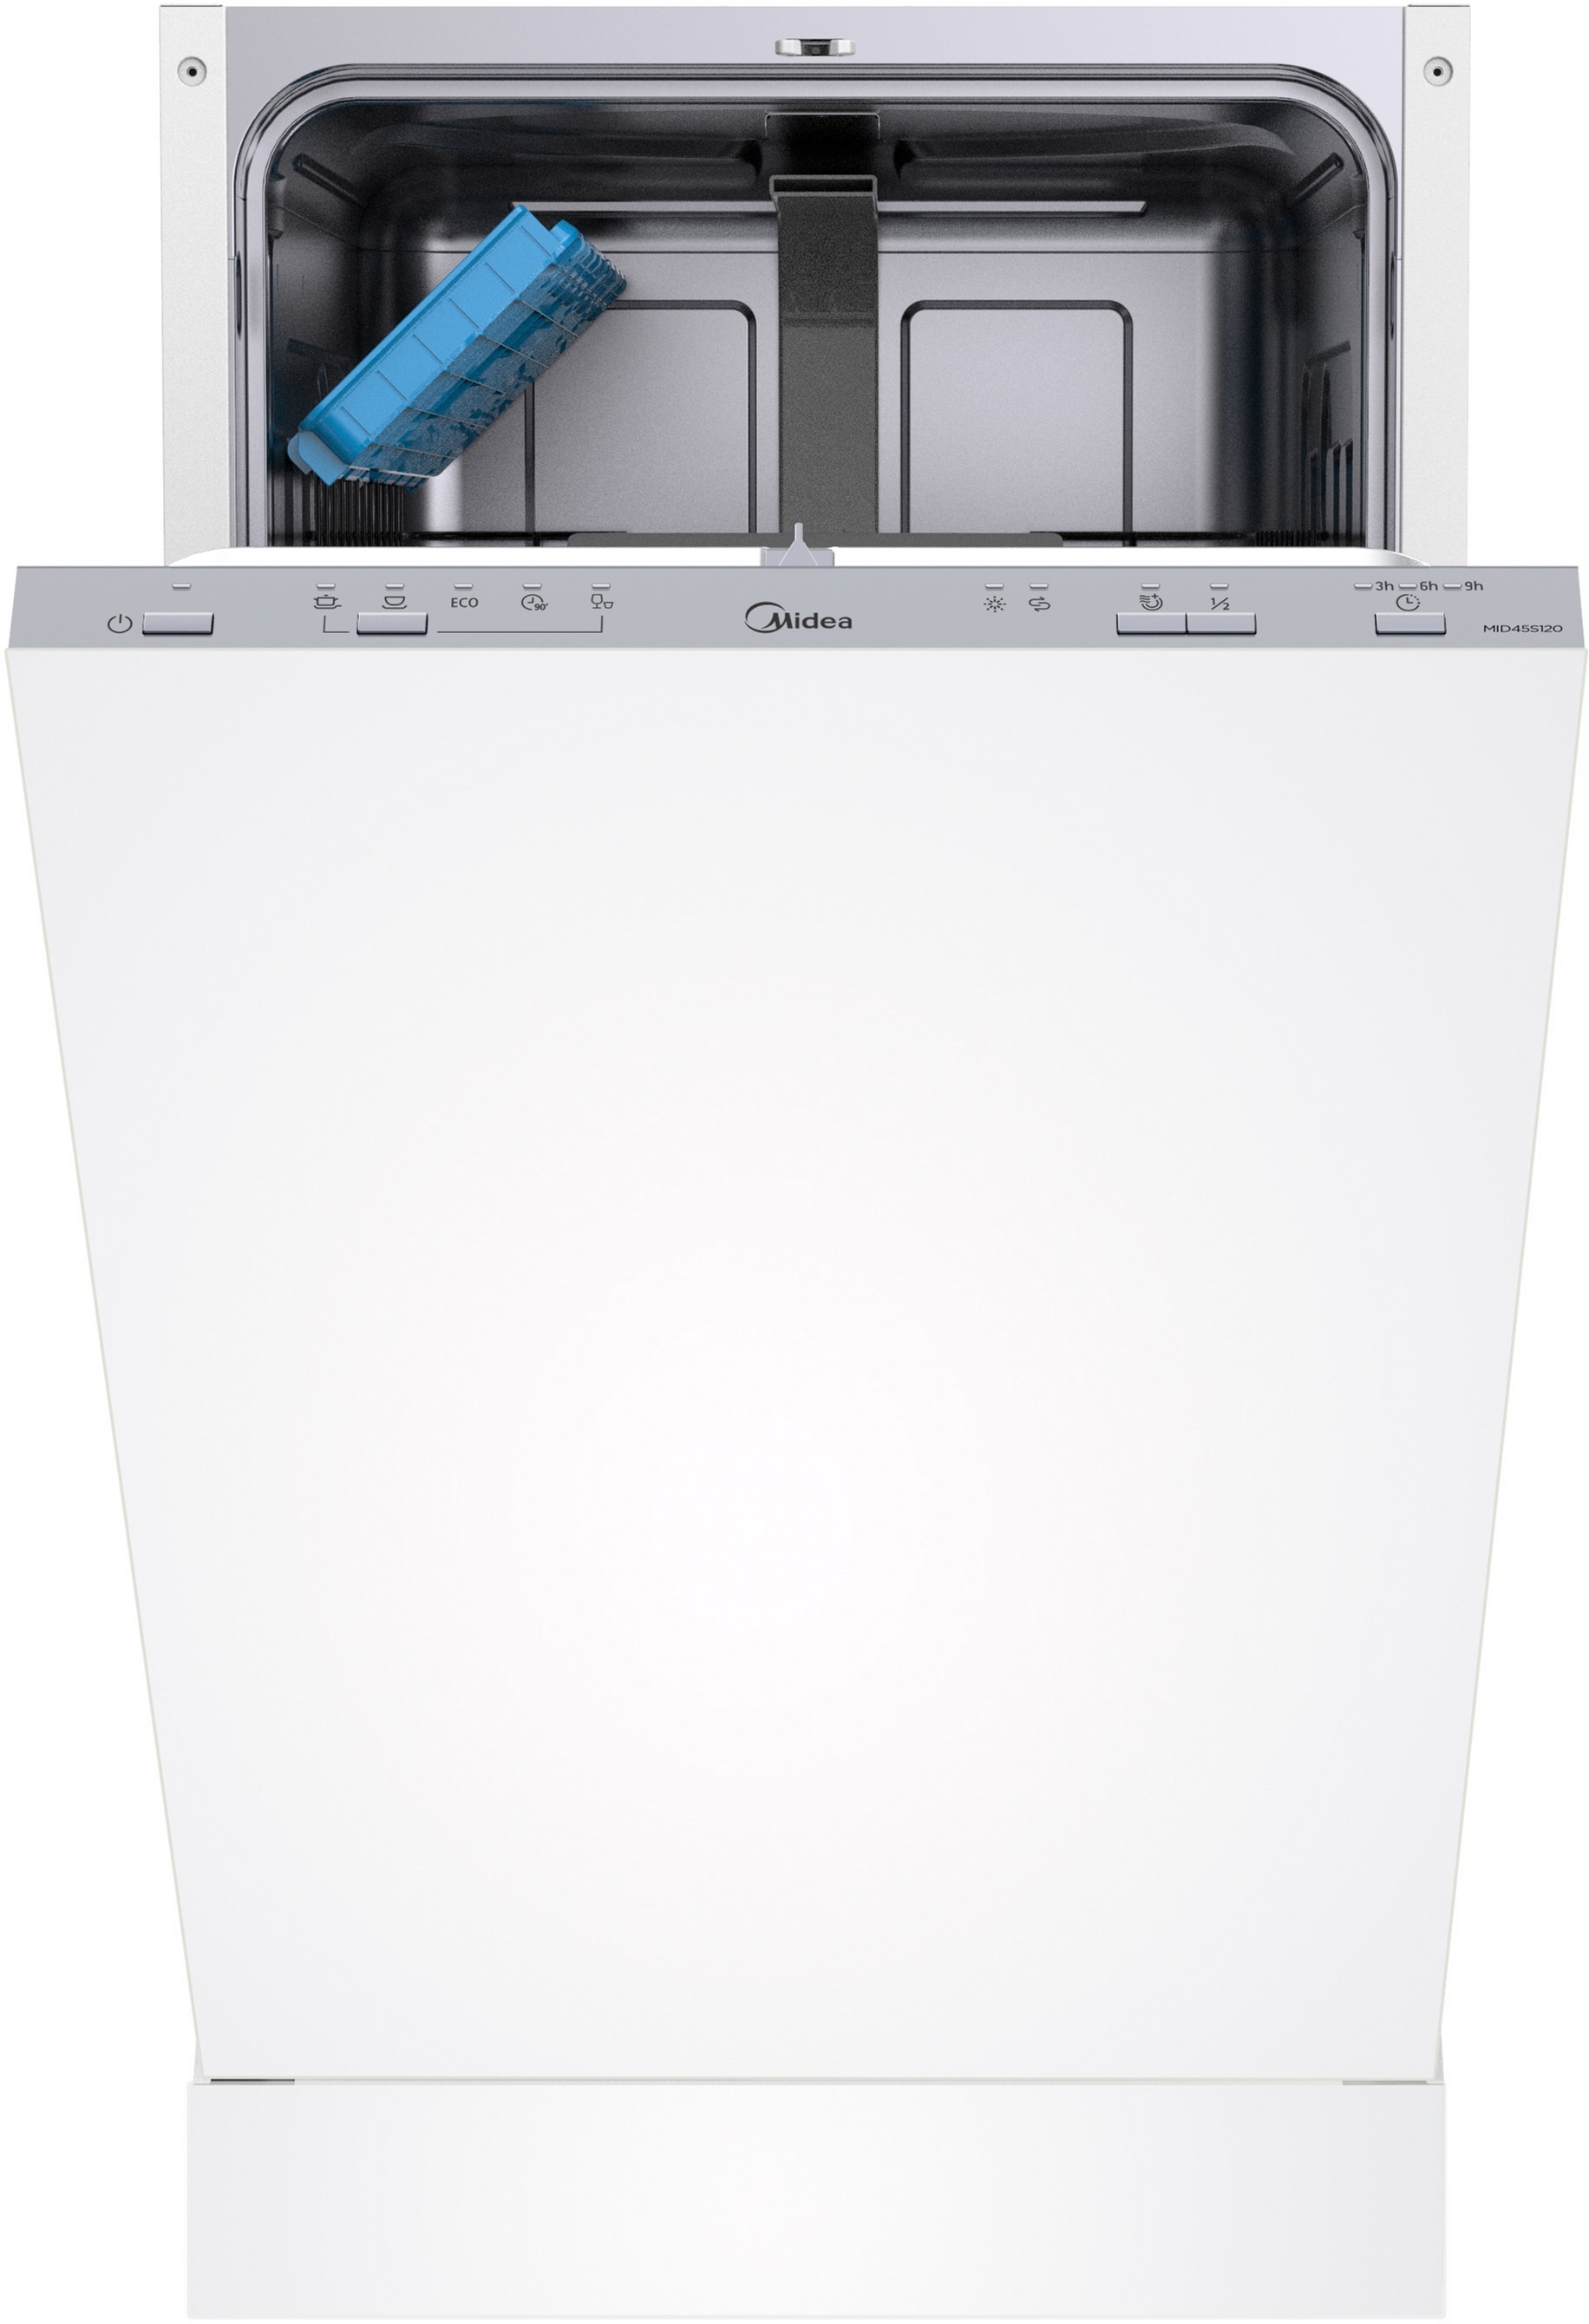 Посудомоечная машина Midea MID45S120 в интернет-магазине, главное фото